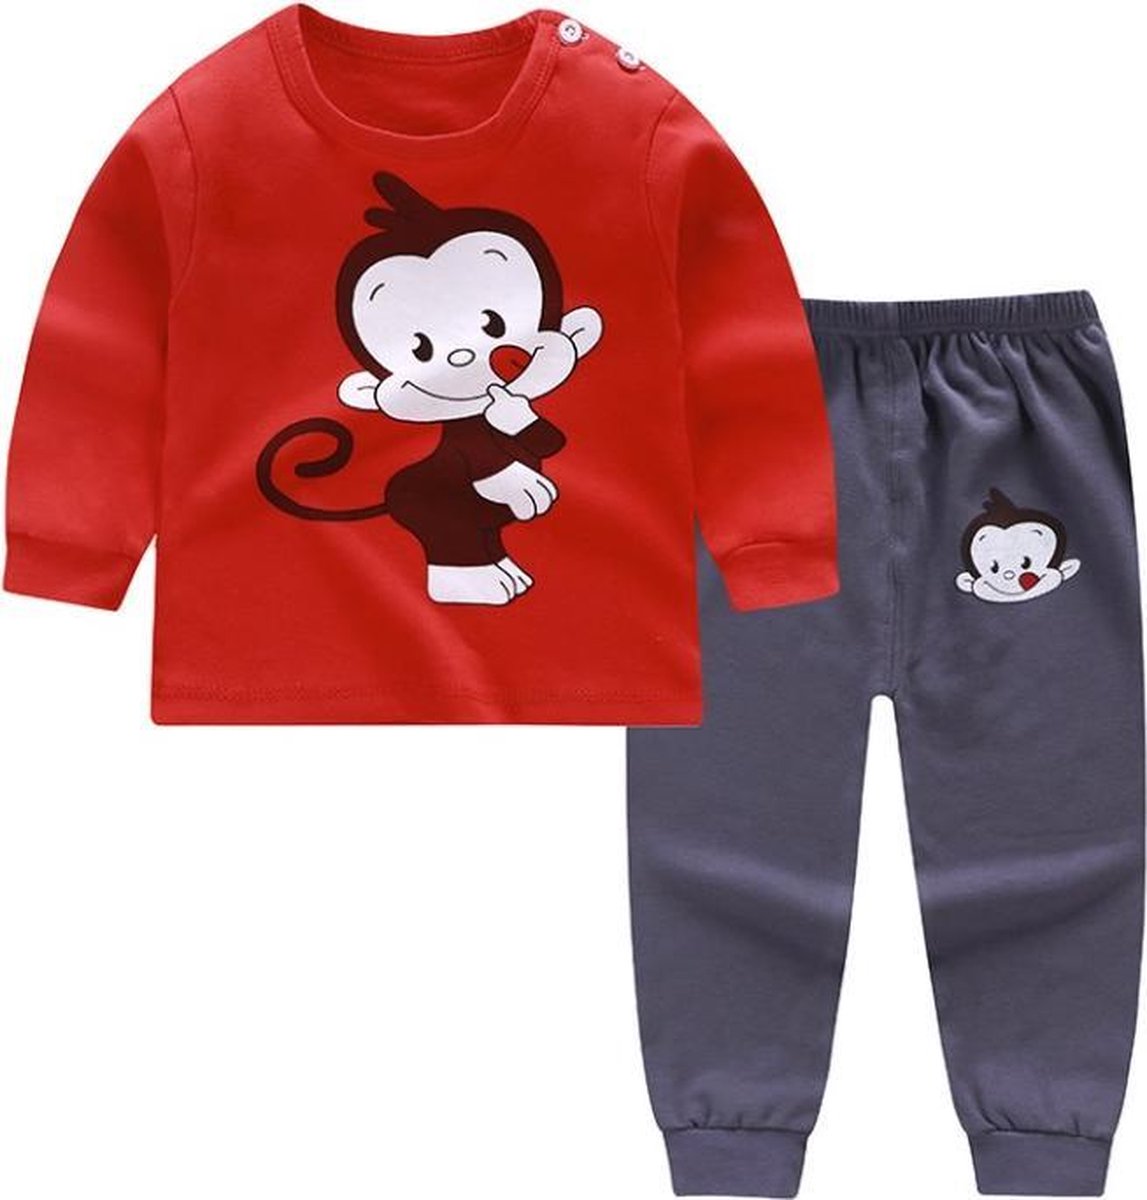 Kinder Pyjama Set-Kinderen-Baby-Jongen/100% katoen/3-4 jaar-maat 100-110